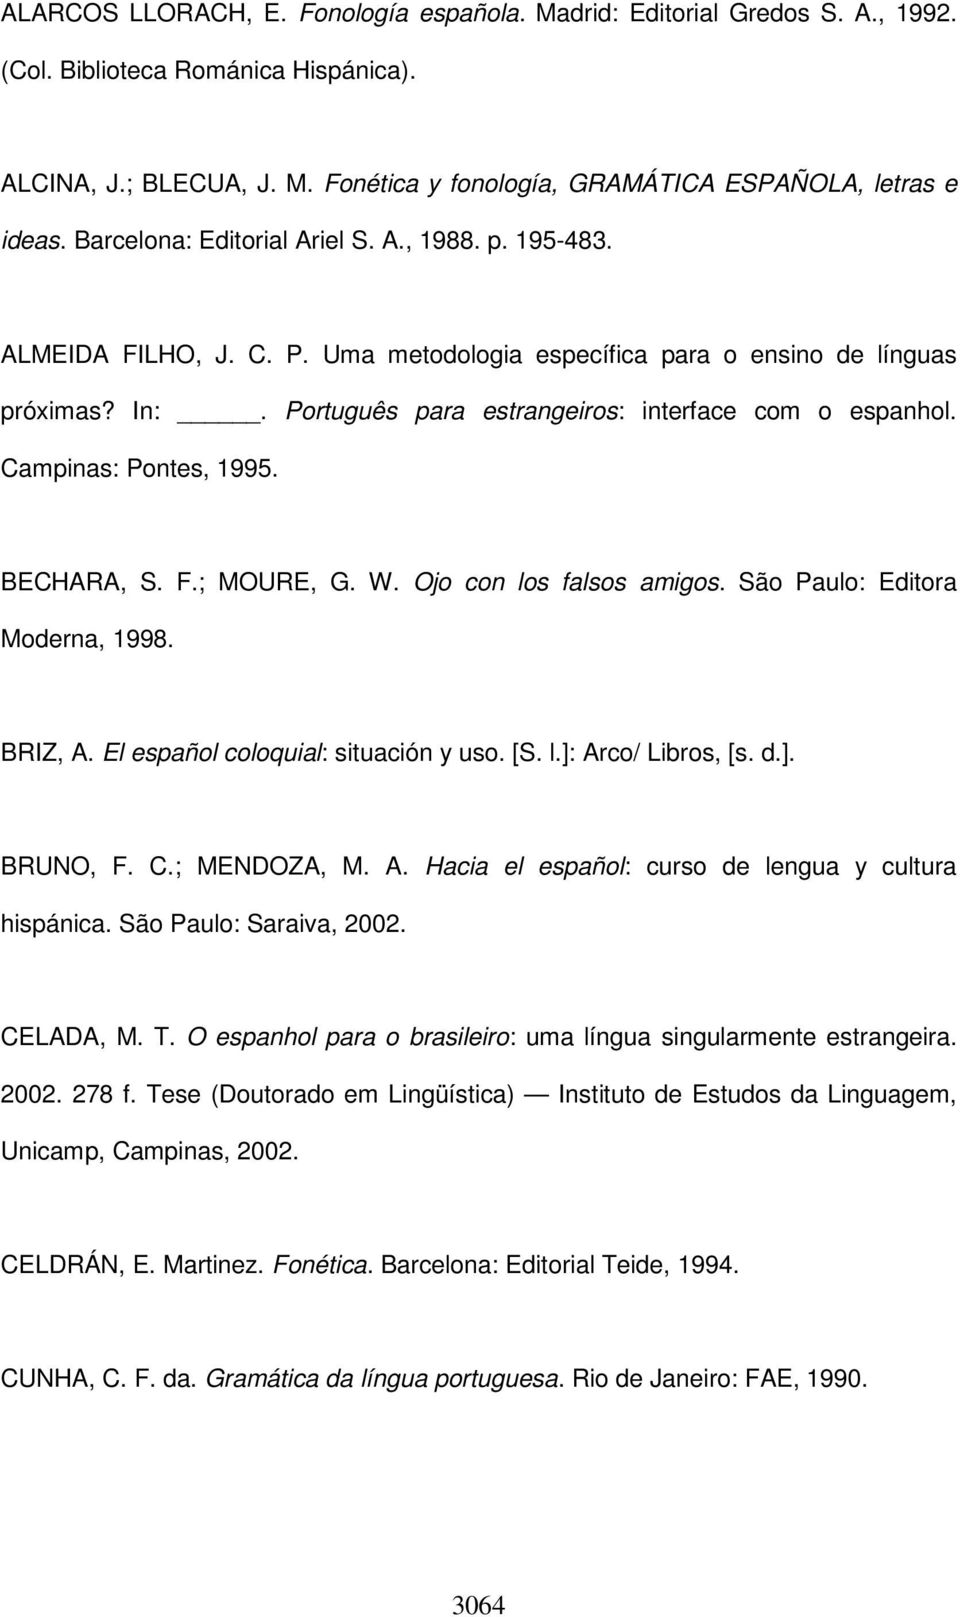 Campinas: Pontes, 1995. BECHARA, S. F.; MOURE, G. W. Ojo con los falsos amigos. São Paulo: Editora Moderna, 1998. BRIZ, A. El español coloquial: situación y uso. [S. l.]: Arco/ Libros, [s. d.]. BRUNO, F.